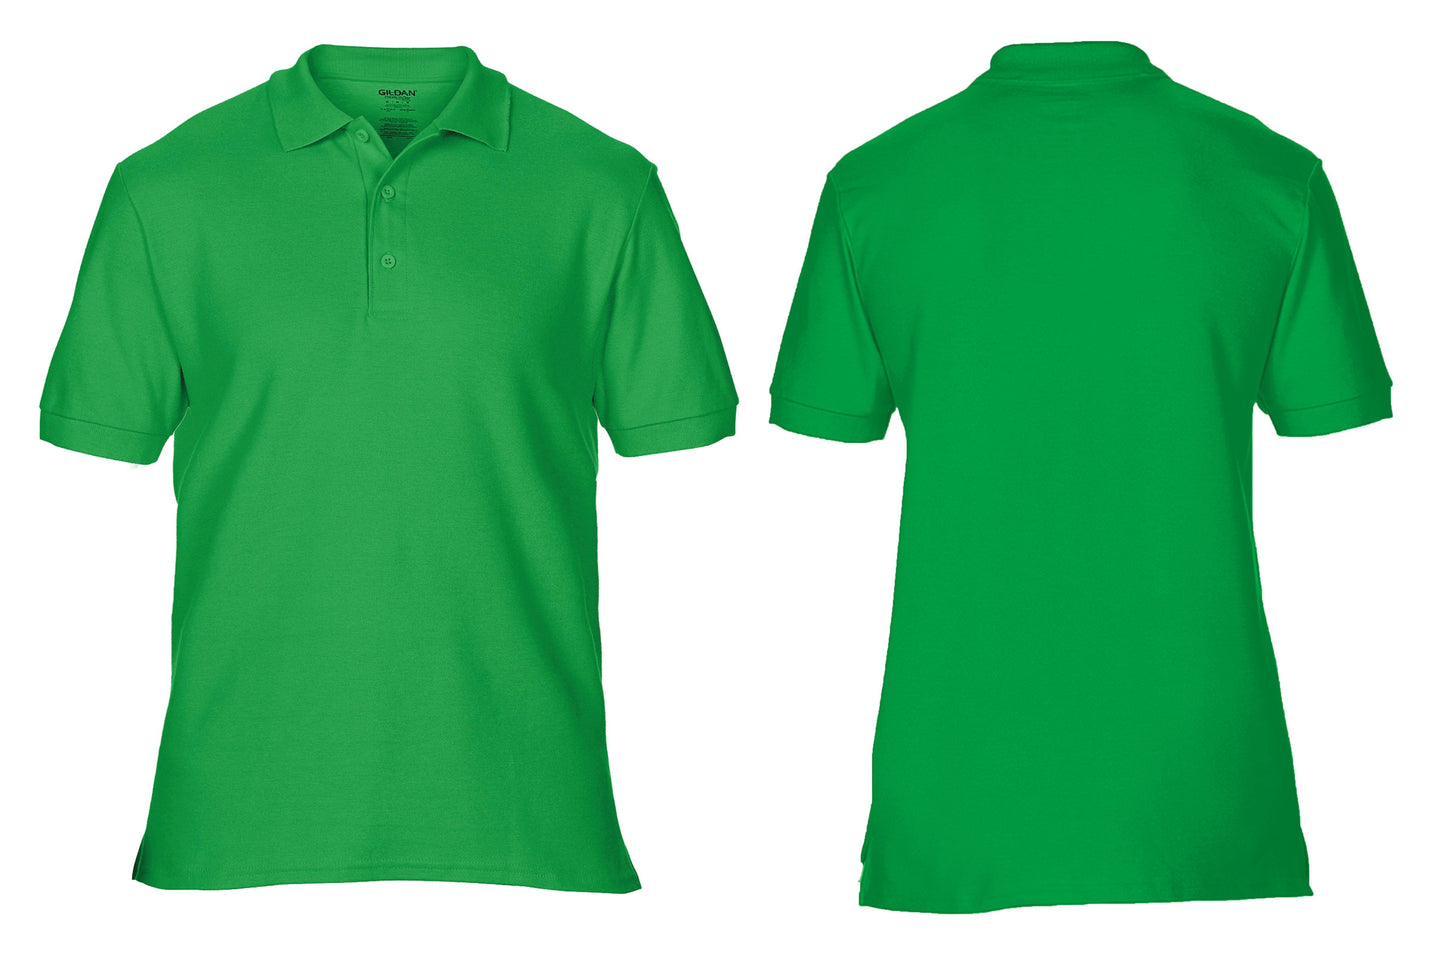 GD042 Premium Cotton® double piqué sport shirt - Trustsport